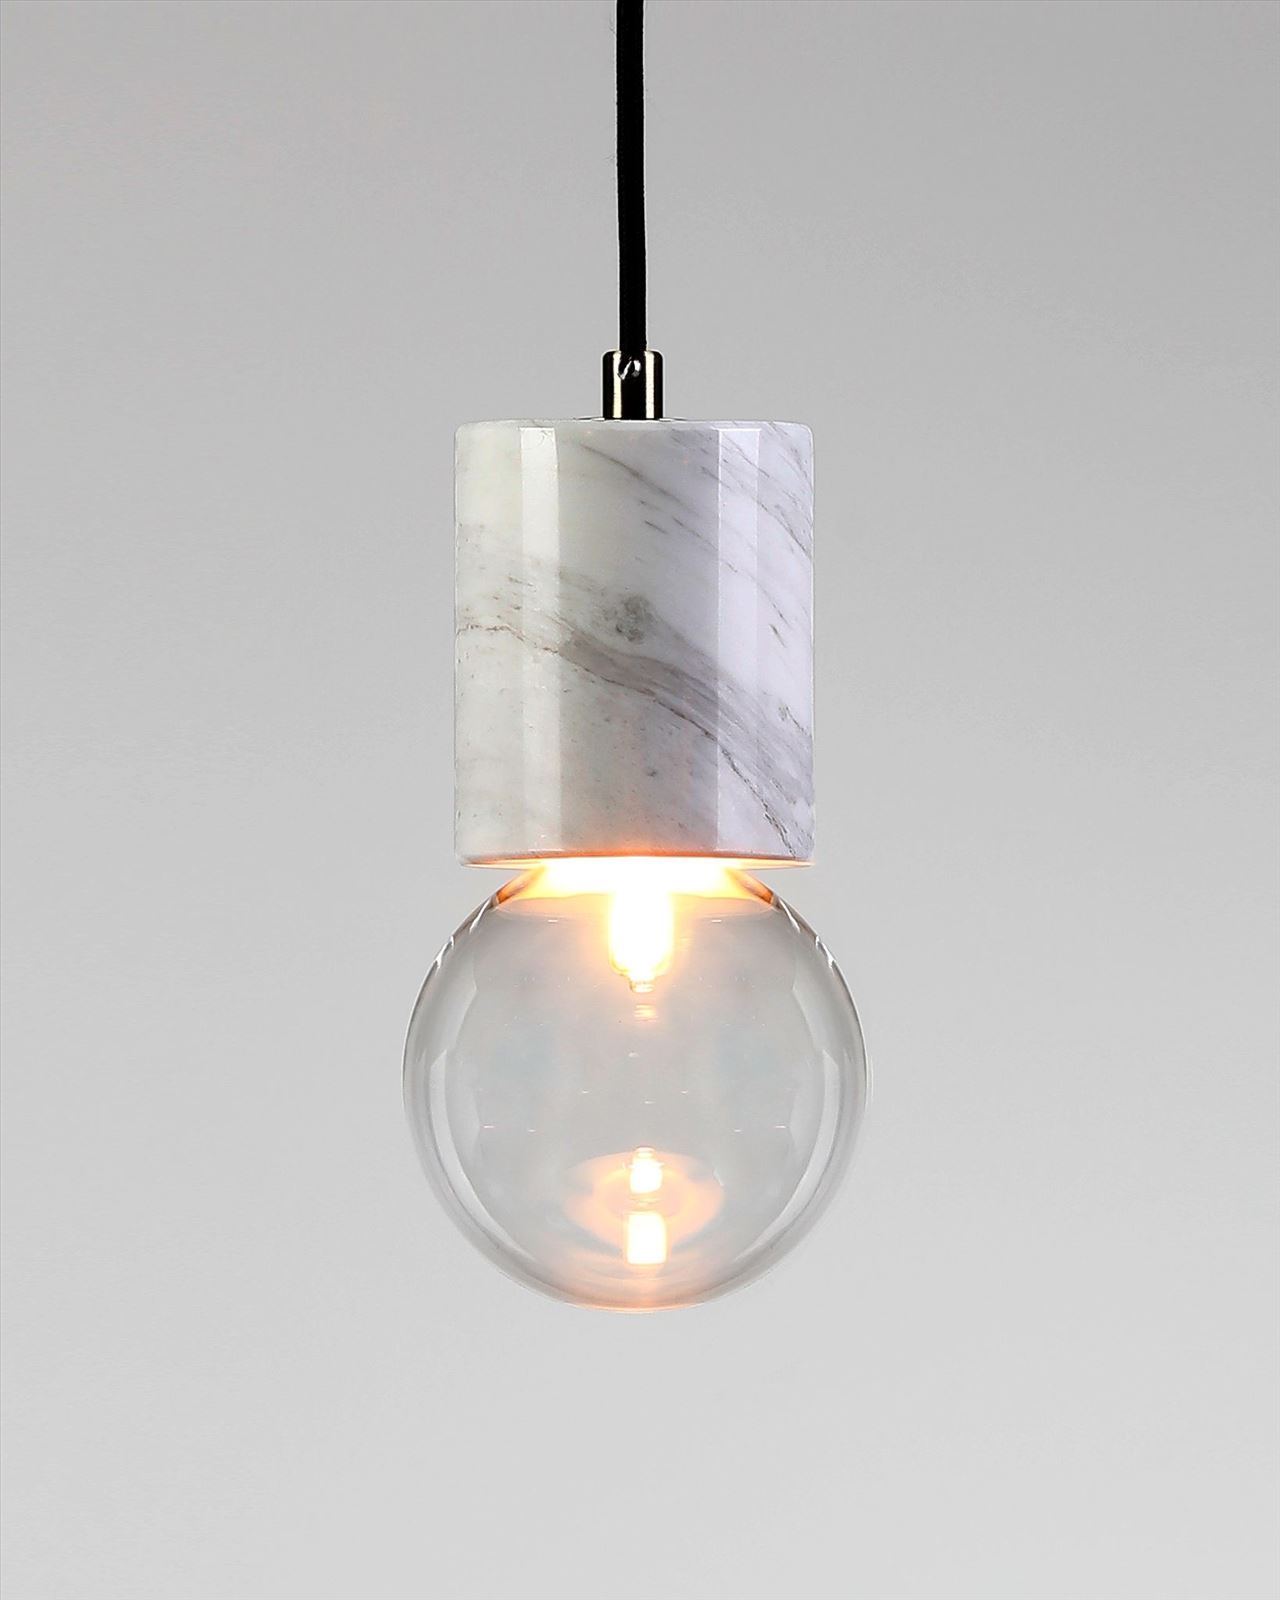 גופי תאורה בקטגוריית מנורות תליה שם המוצר Badolina • Dori Kimhi Lighting 9174